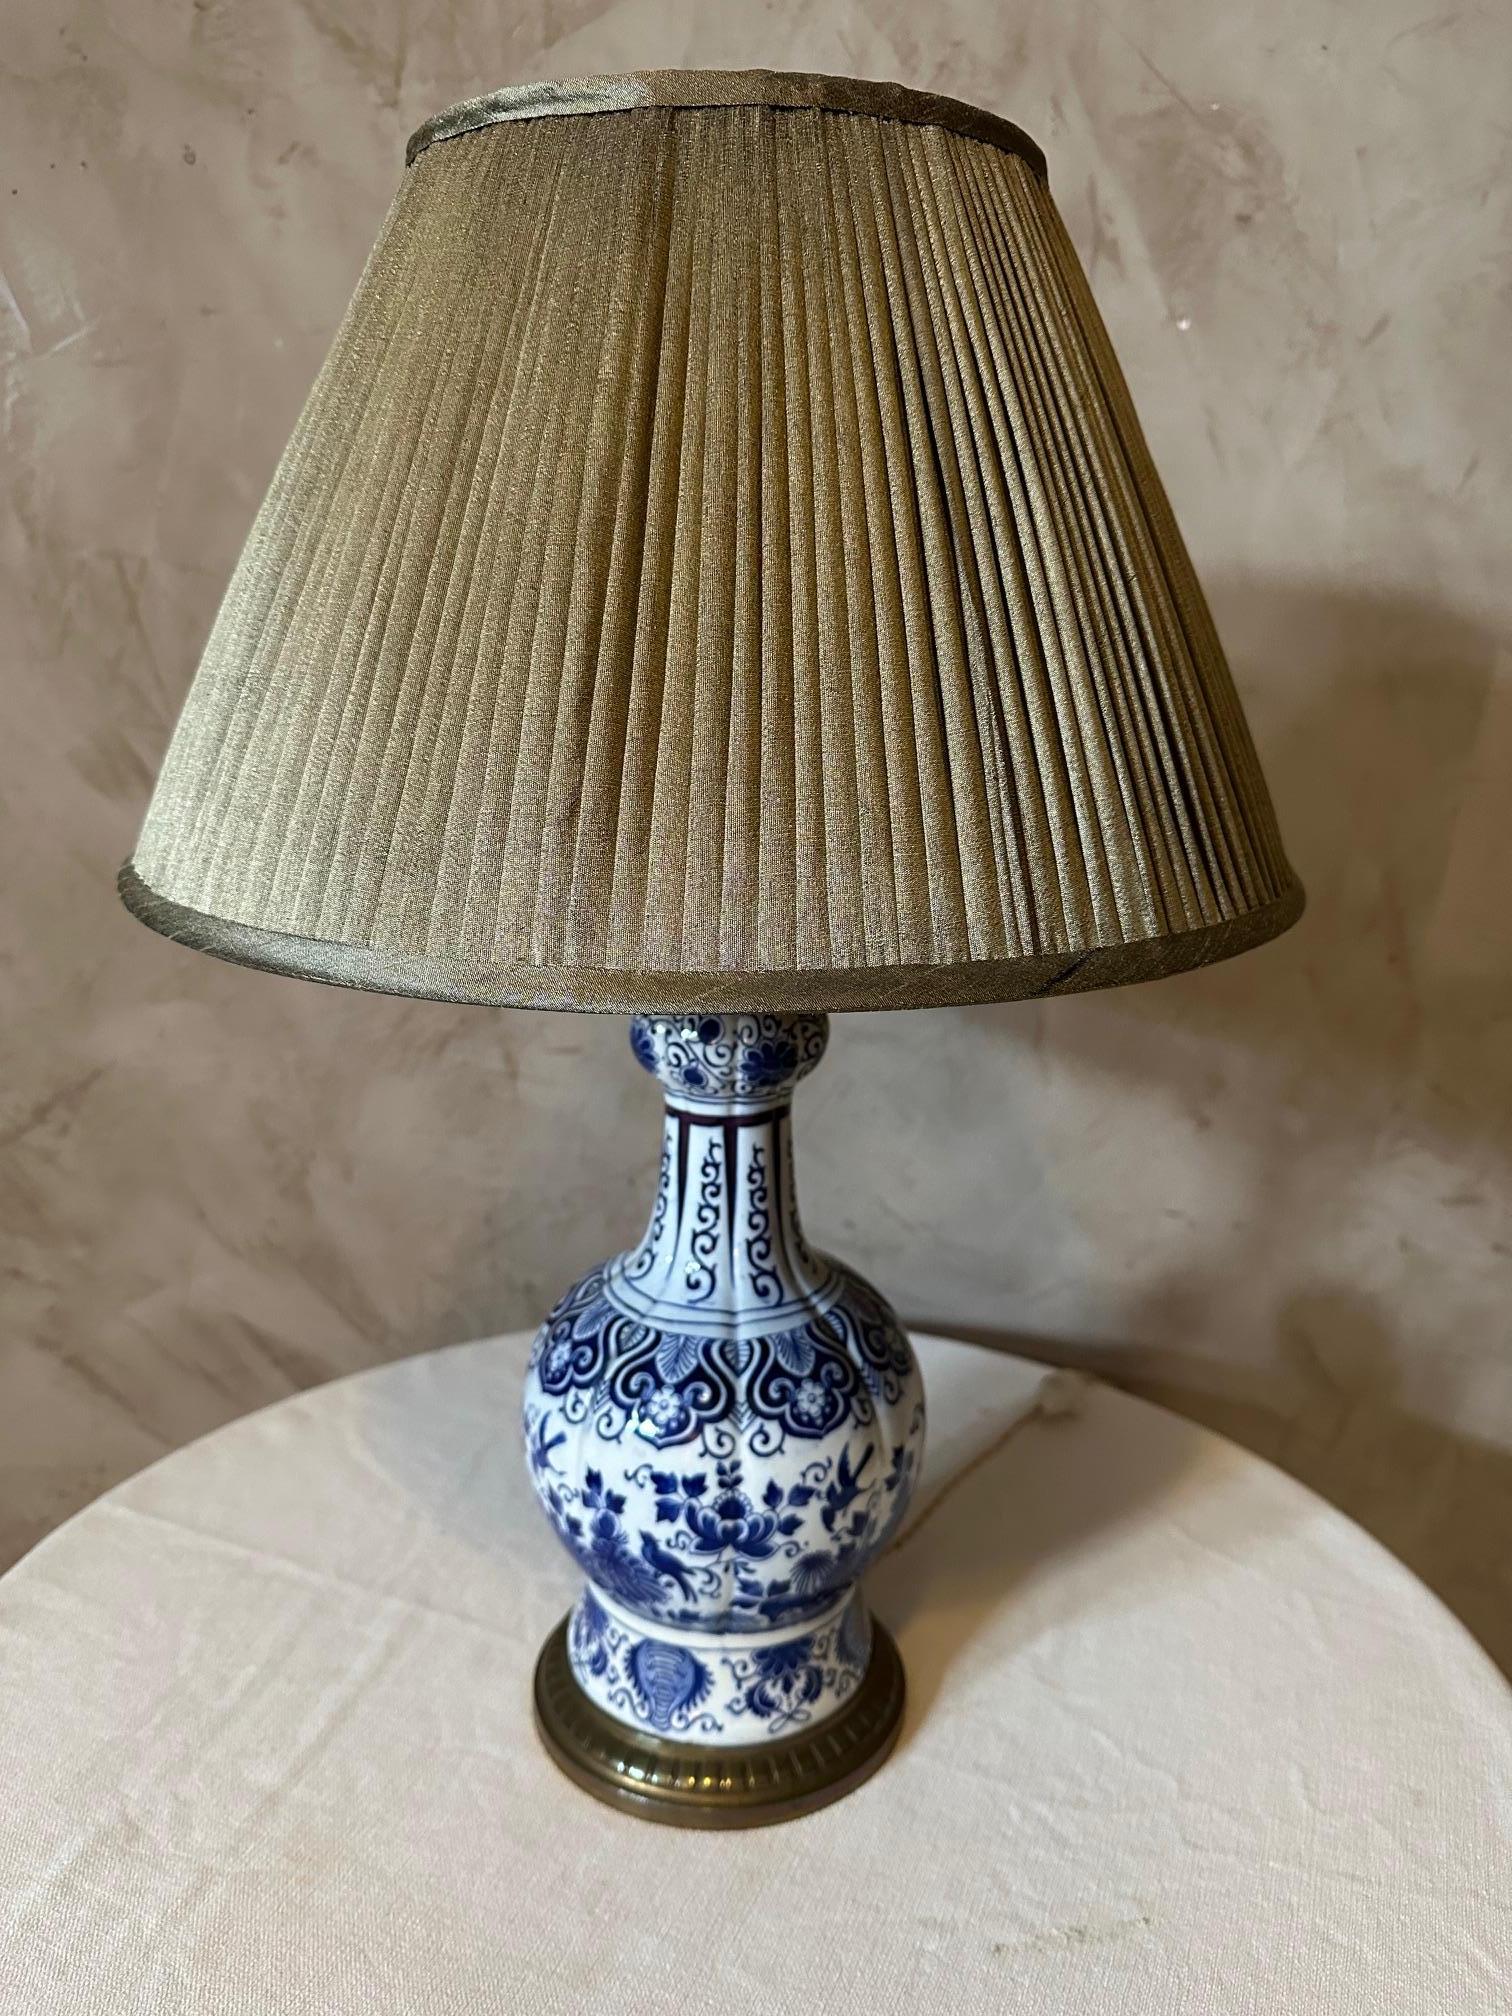 Sehr schöne blau-weiße Delfter Porzellanlampe aus dem 19. Jahrhundert. Schöne Form. Schöne Blumen und Vögel als Dekoration. 
Sehr guter Zustand. 
Plissierter Lampenschirm. 